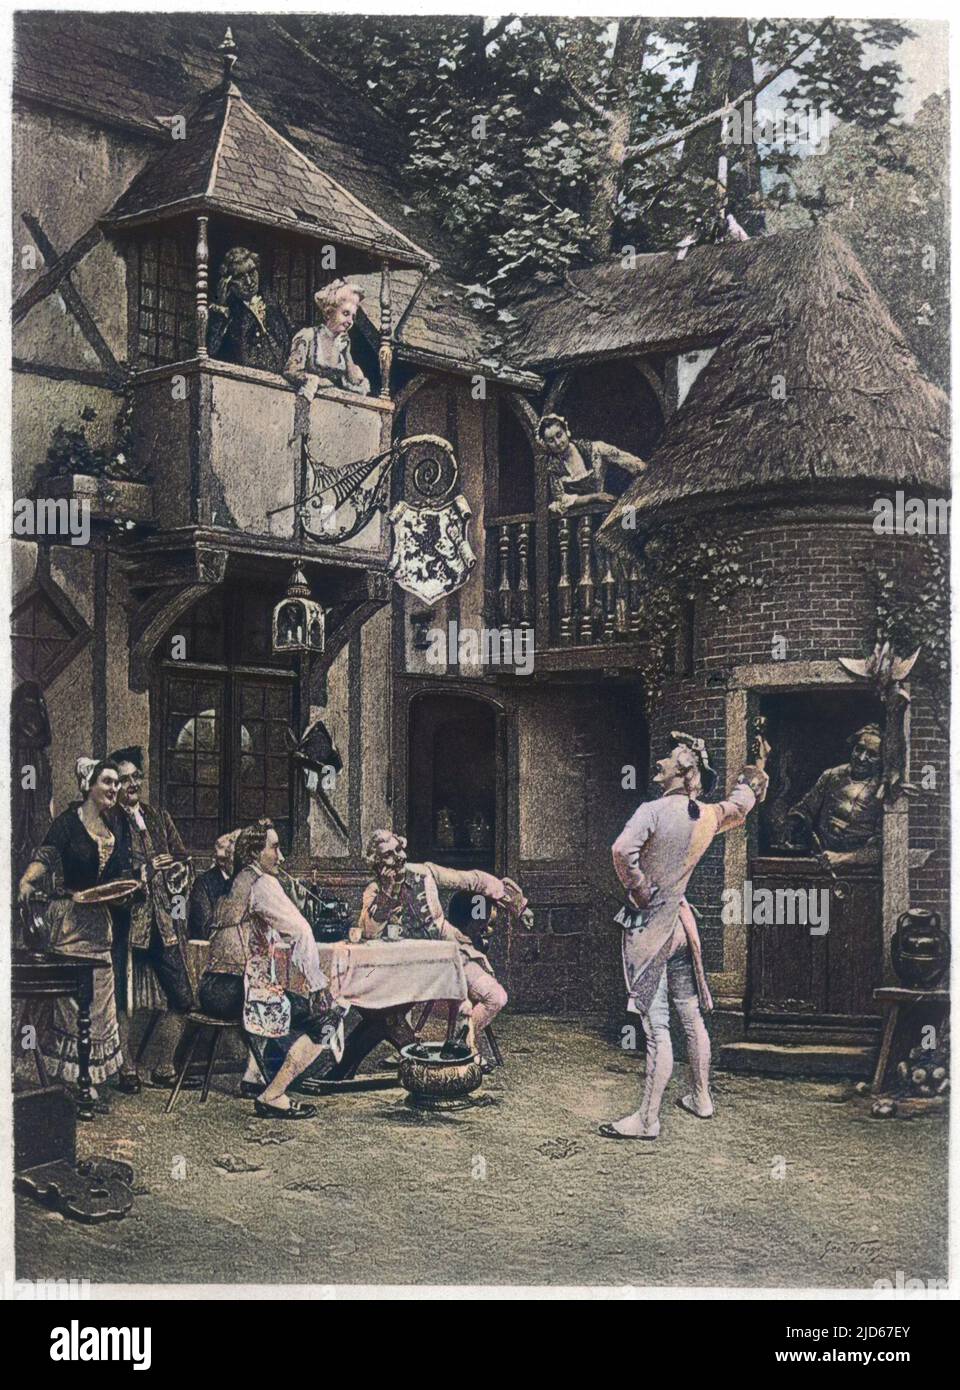 Votre santé madame. Une scène de boisson à l'extérieur d'un pub de village anglais. Version colorisée de : 10019350 Date: Vers 1750 Banque D'Images